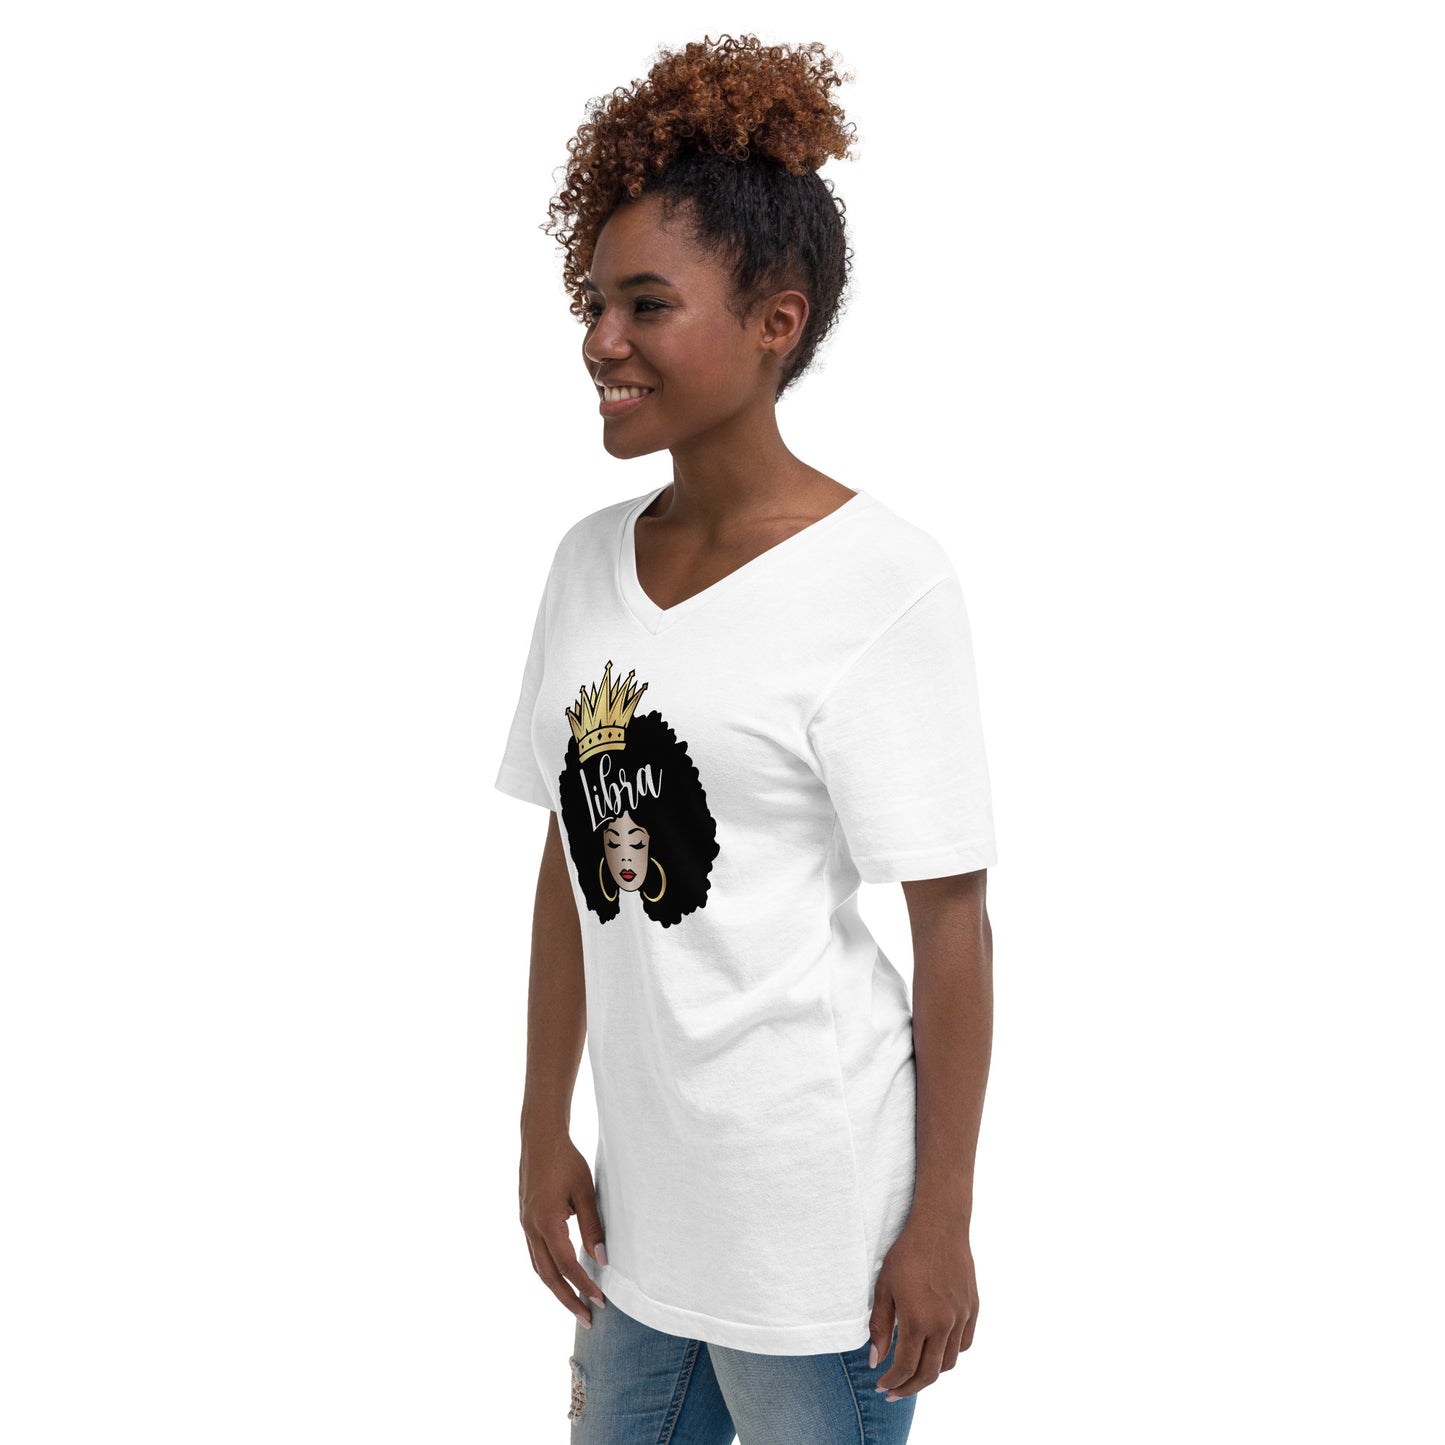 Women's Short Sleeve V-Neck T-Shirt - Libra Afro Queen